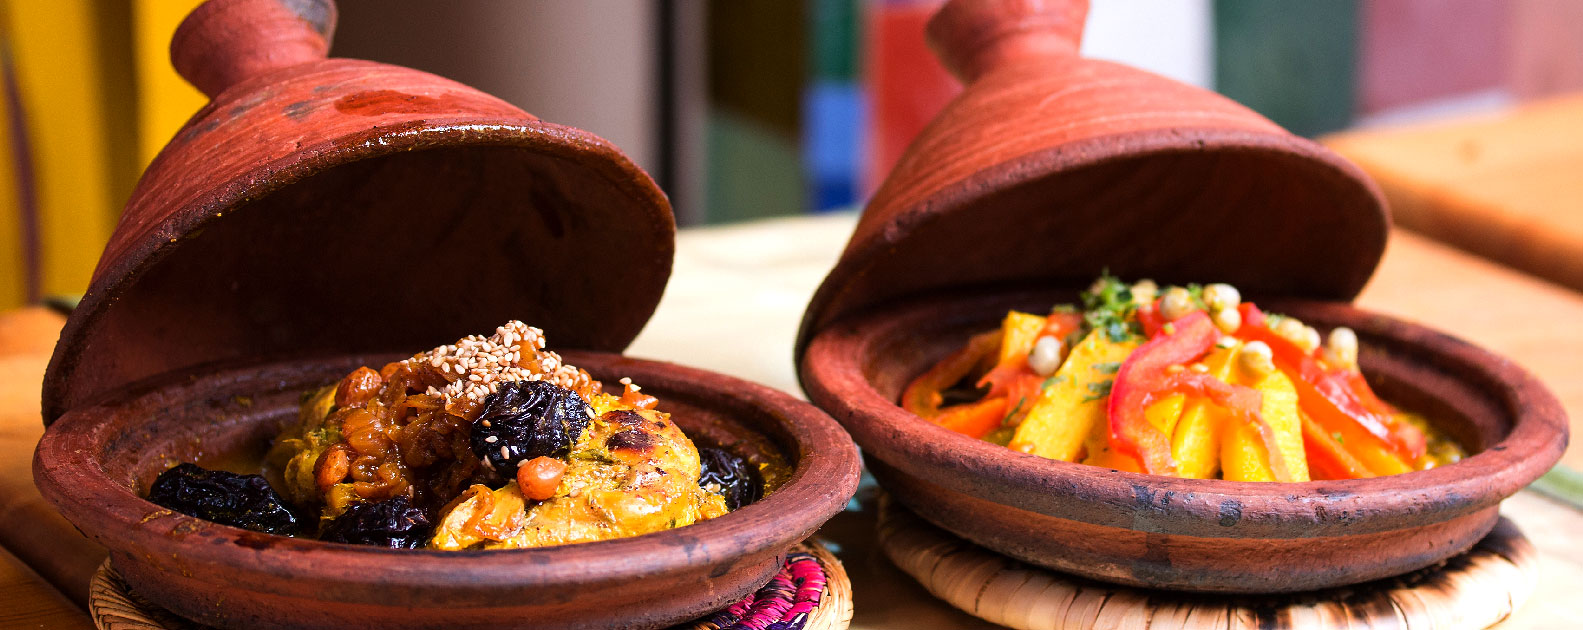 De geneugten van de Marokkaanse gastronomie